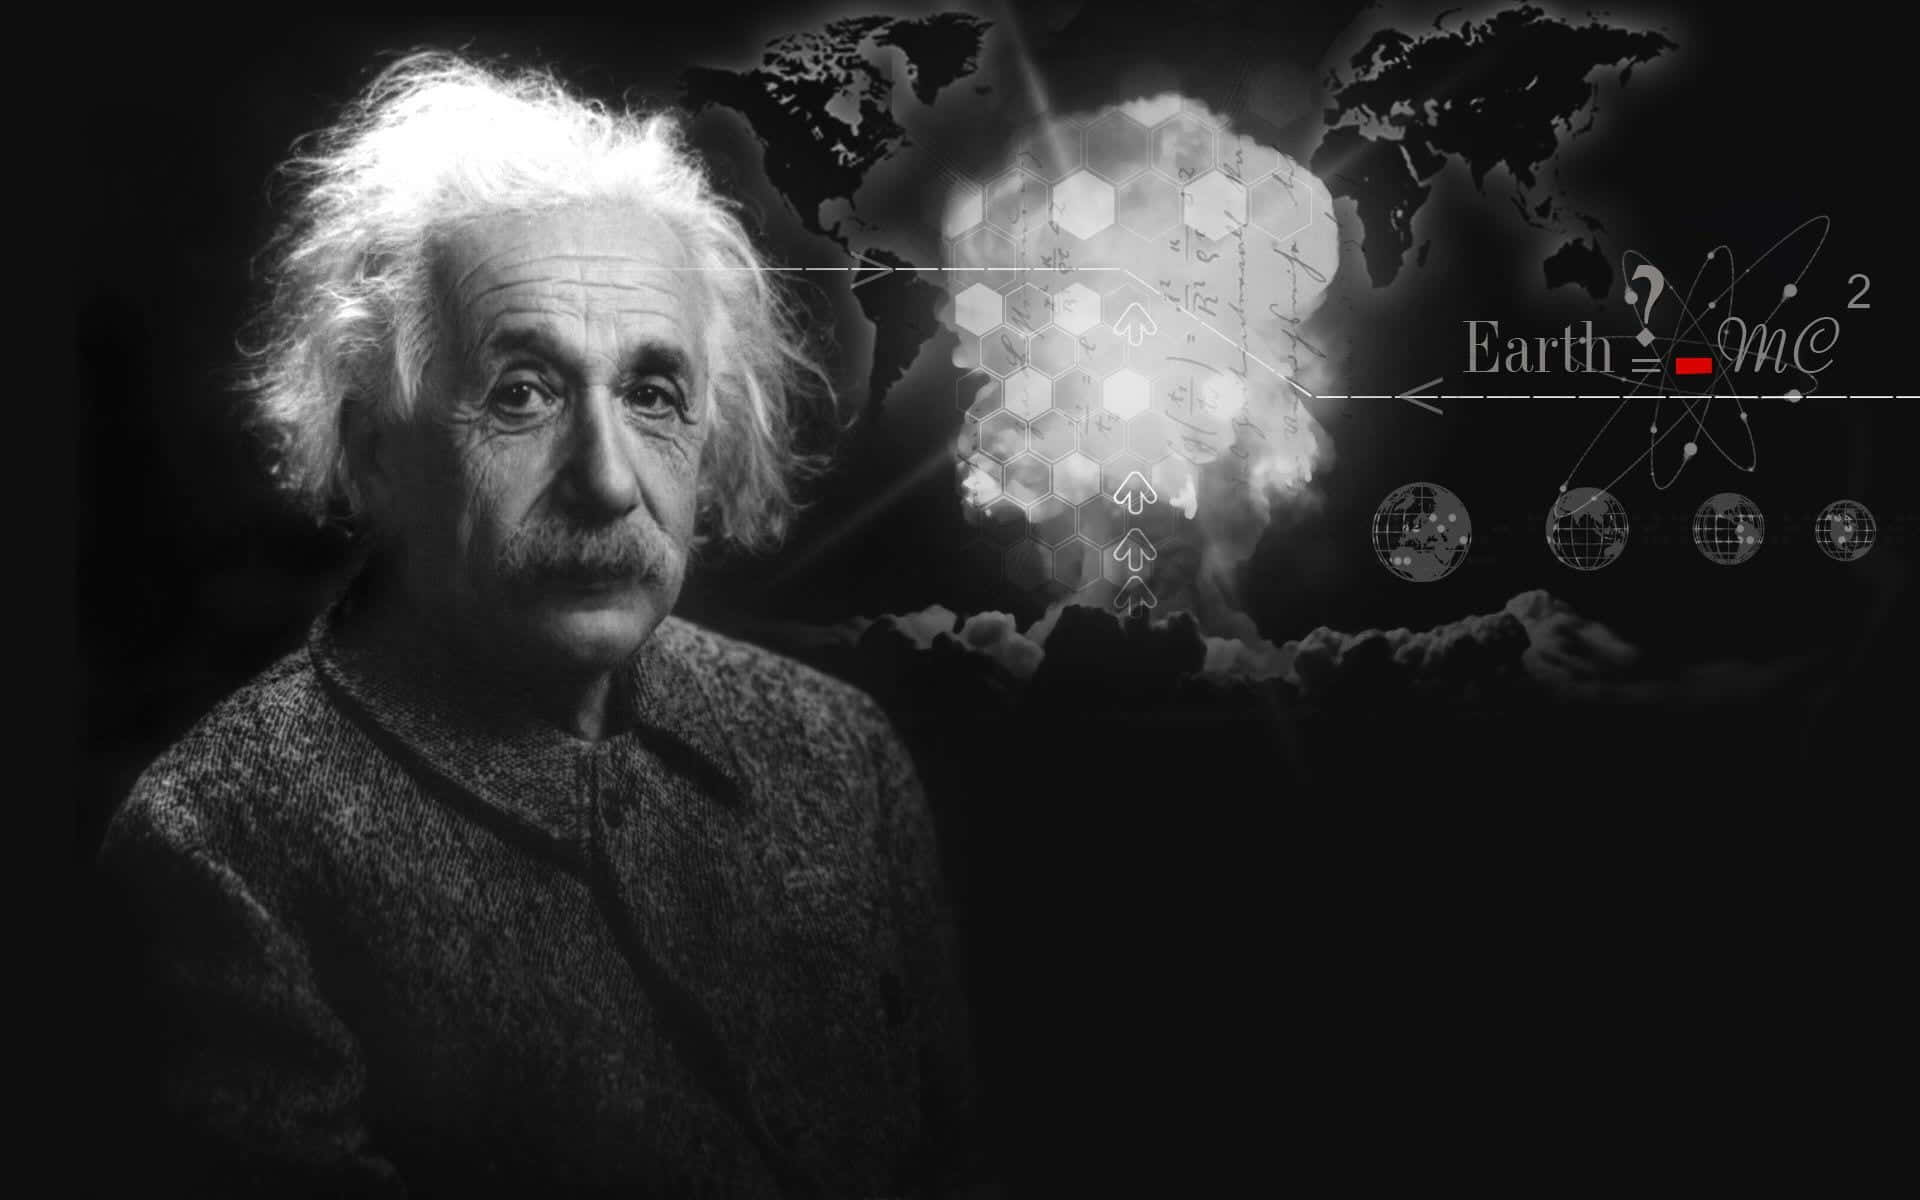 Albert Einstein, world renowned physicist